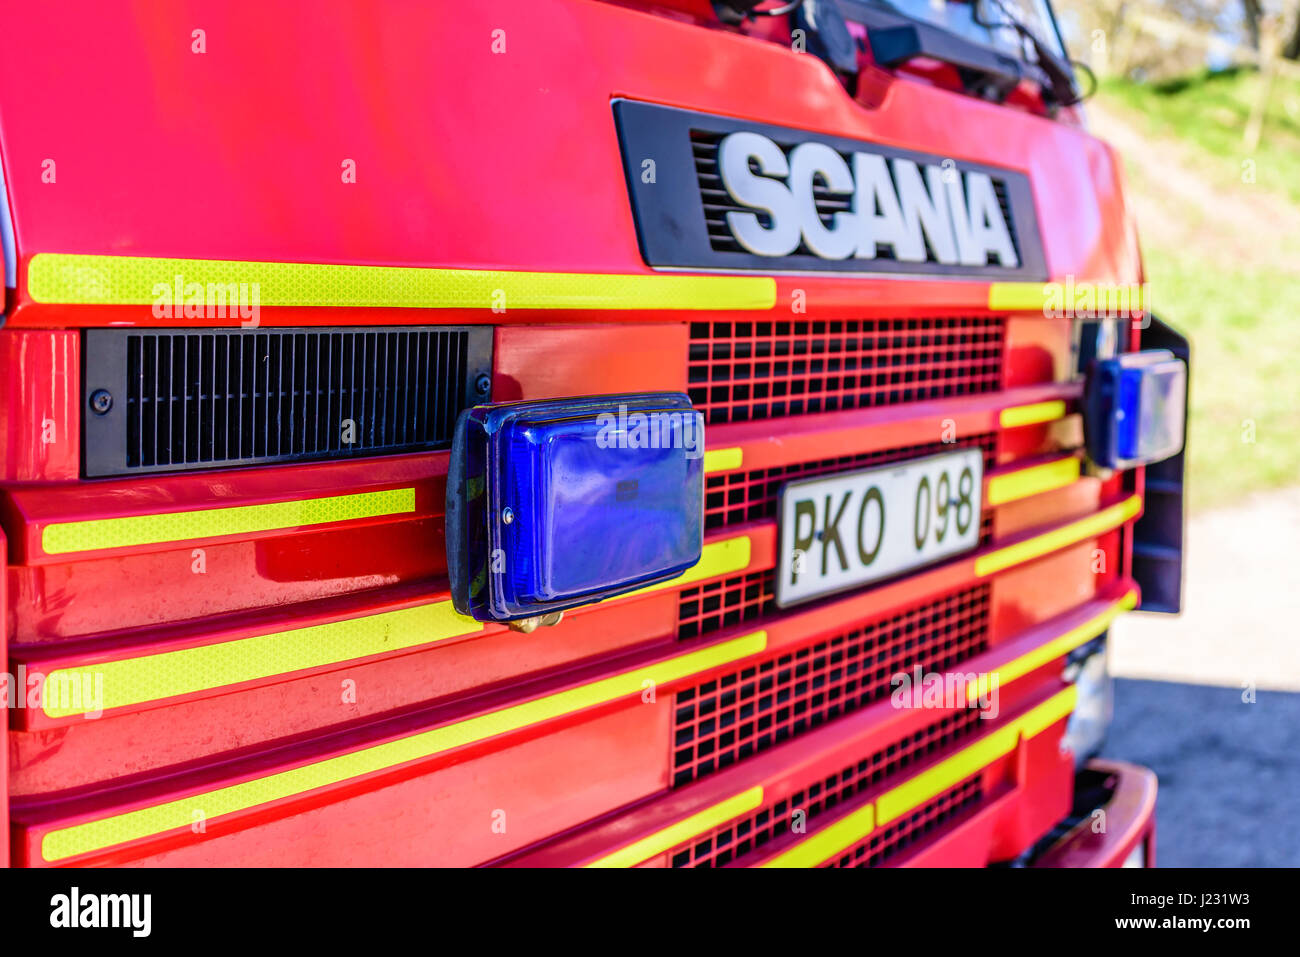 Brakne Hoby, Suède - 22 Avril 2017 : Documentaire de camion d'incendie public présentation. Feux du véhicule d'urgence bleu sur l'avant du camion de pompiers Scania. Banque D'Images